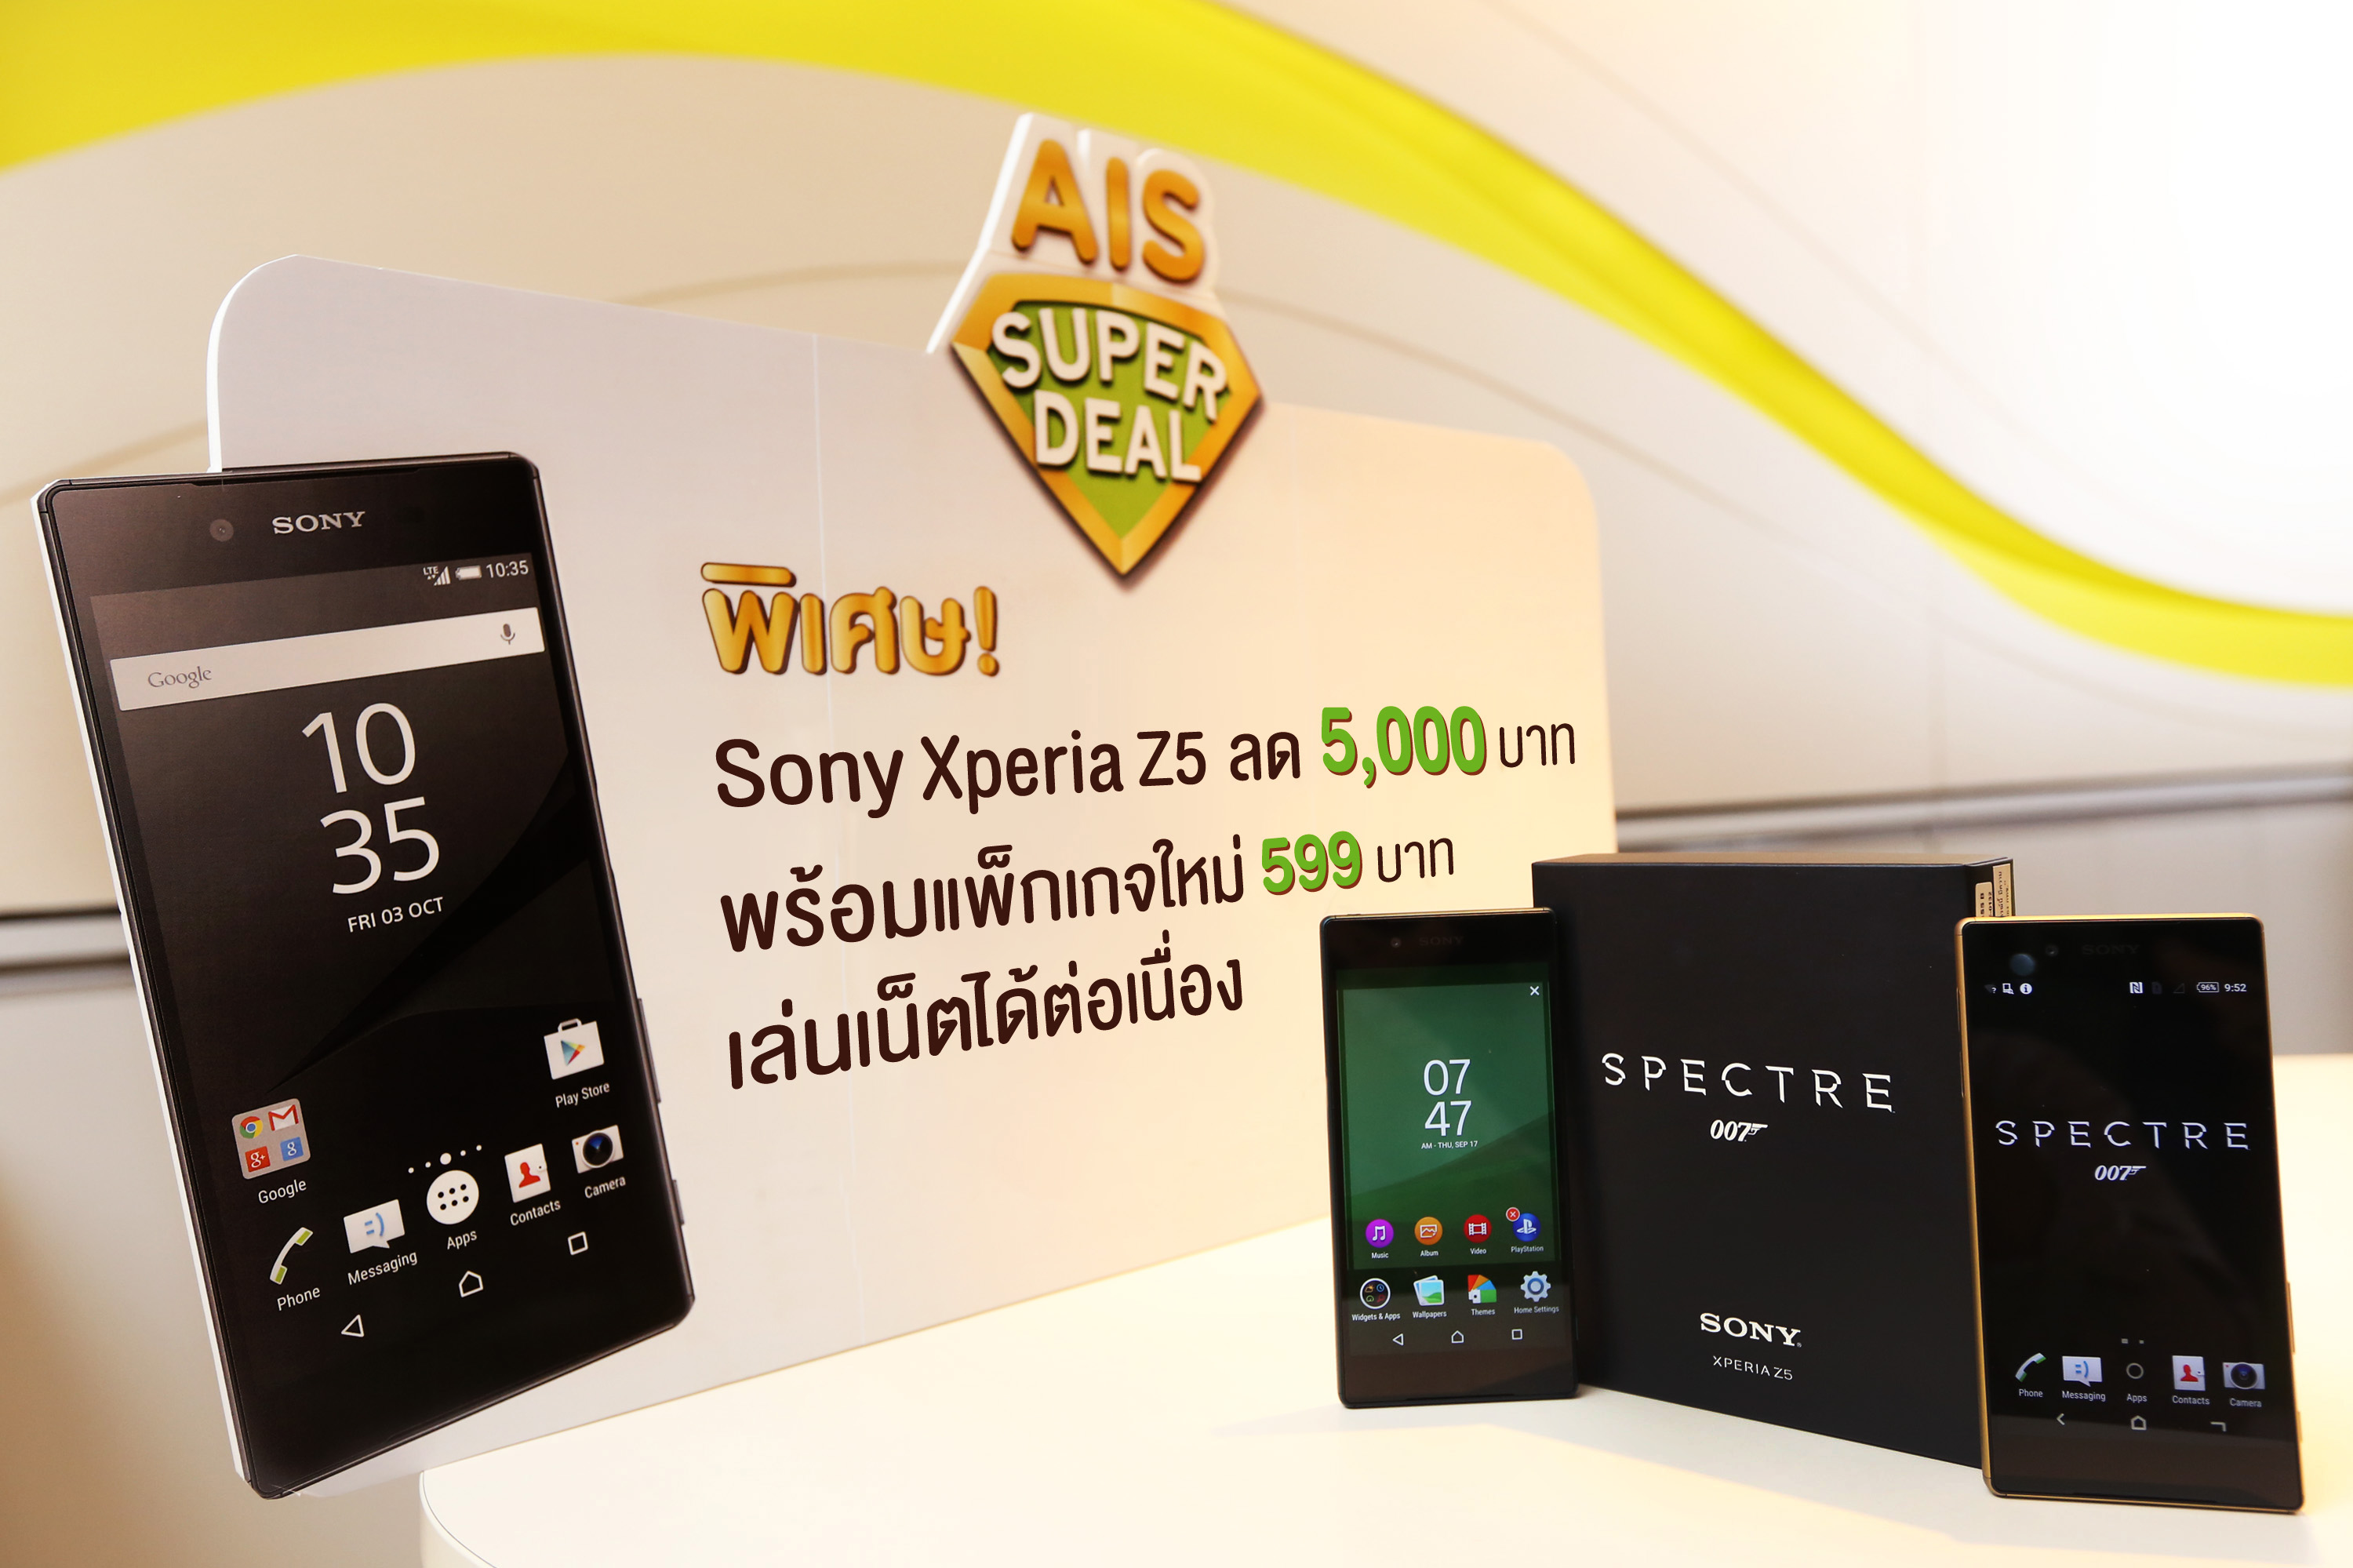 AIS Super Deal ลดราคา Sony Xperia Z5 ทันที 5,000 บาท